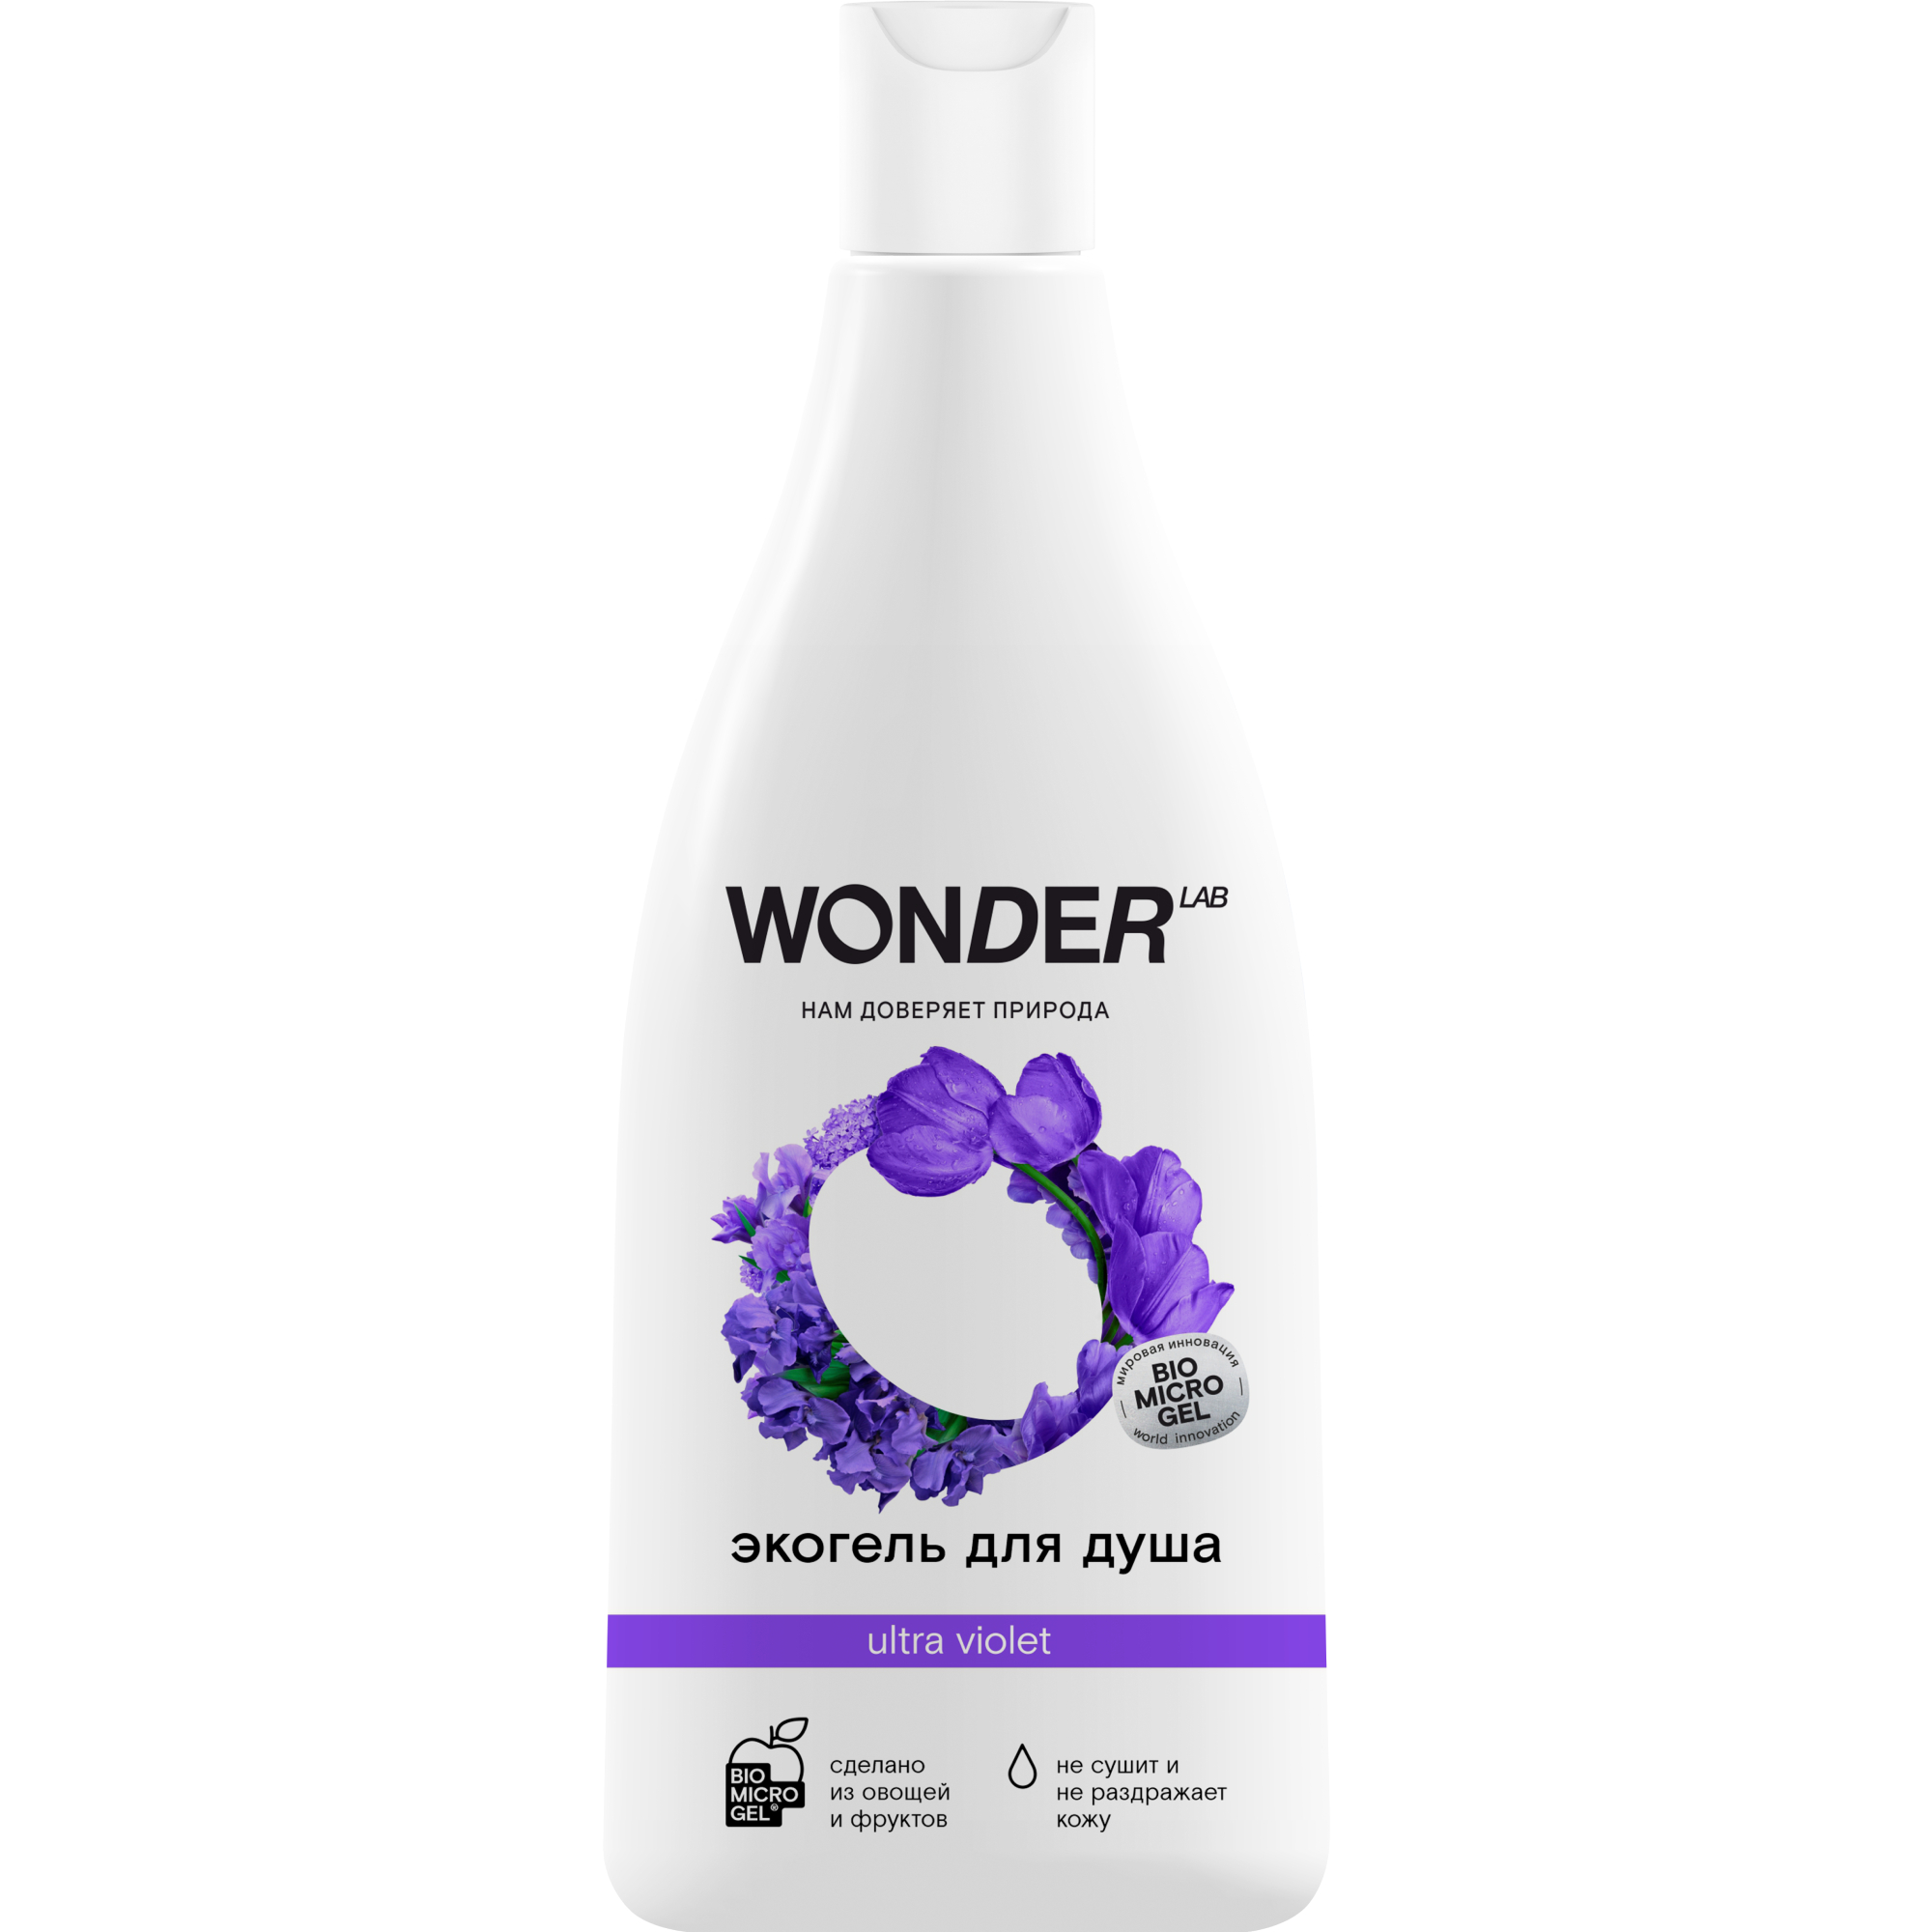 Гель для душа WONDER LAB ultra violet увлажняющий Полевые цветы 550 мл wonder lab набор из 2 штук детский гель для душа 2в1 озорная дыня и фруктовый мармелад 1100 0